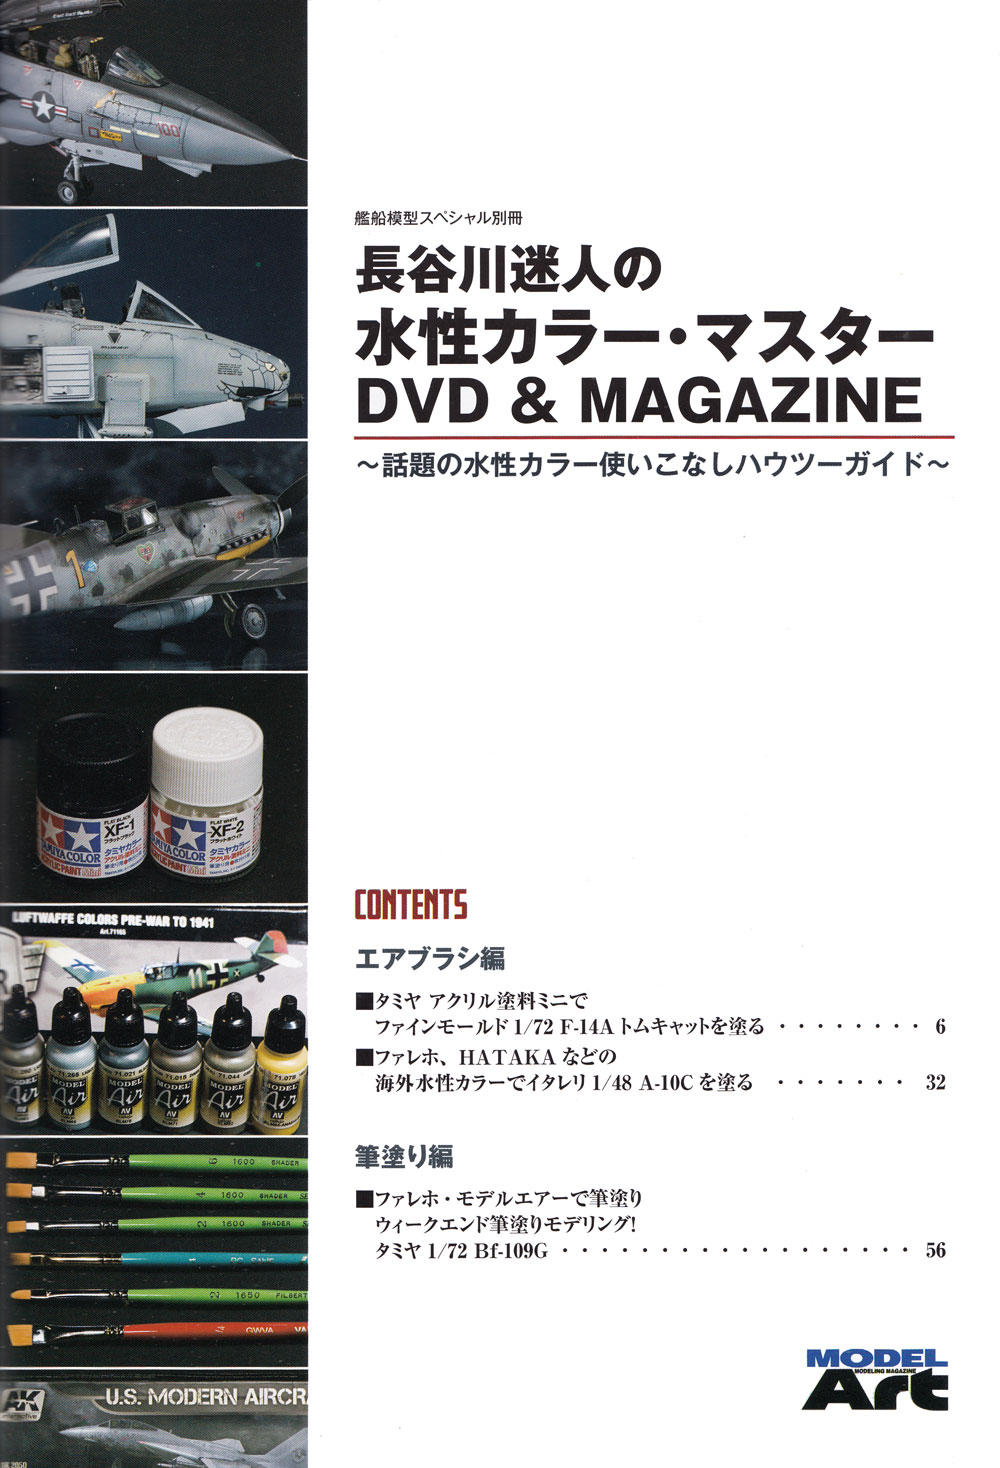 長谷川迷人の水性カラー・マスター DVD & MAGAZINE 本 (モデルアート DVDシリーズ No.12320-08) 商品画像_1